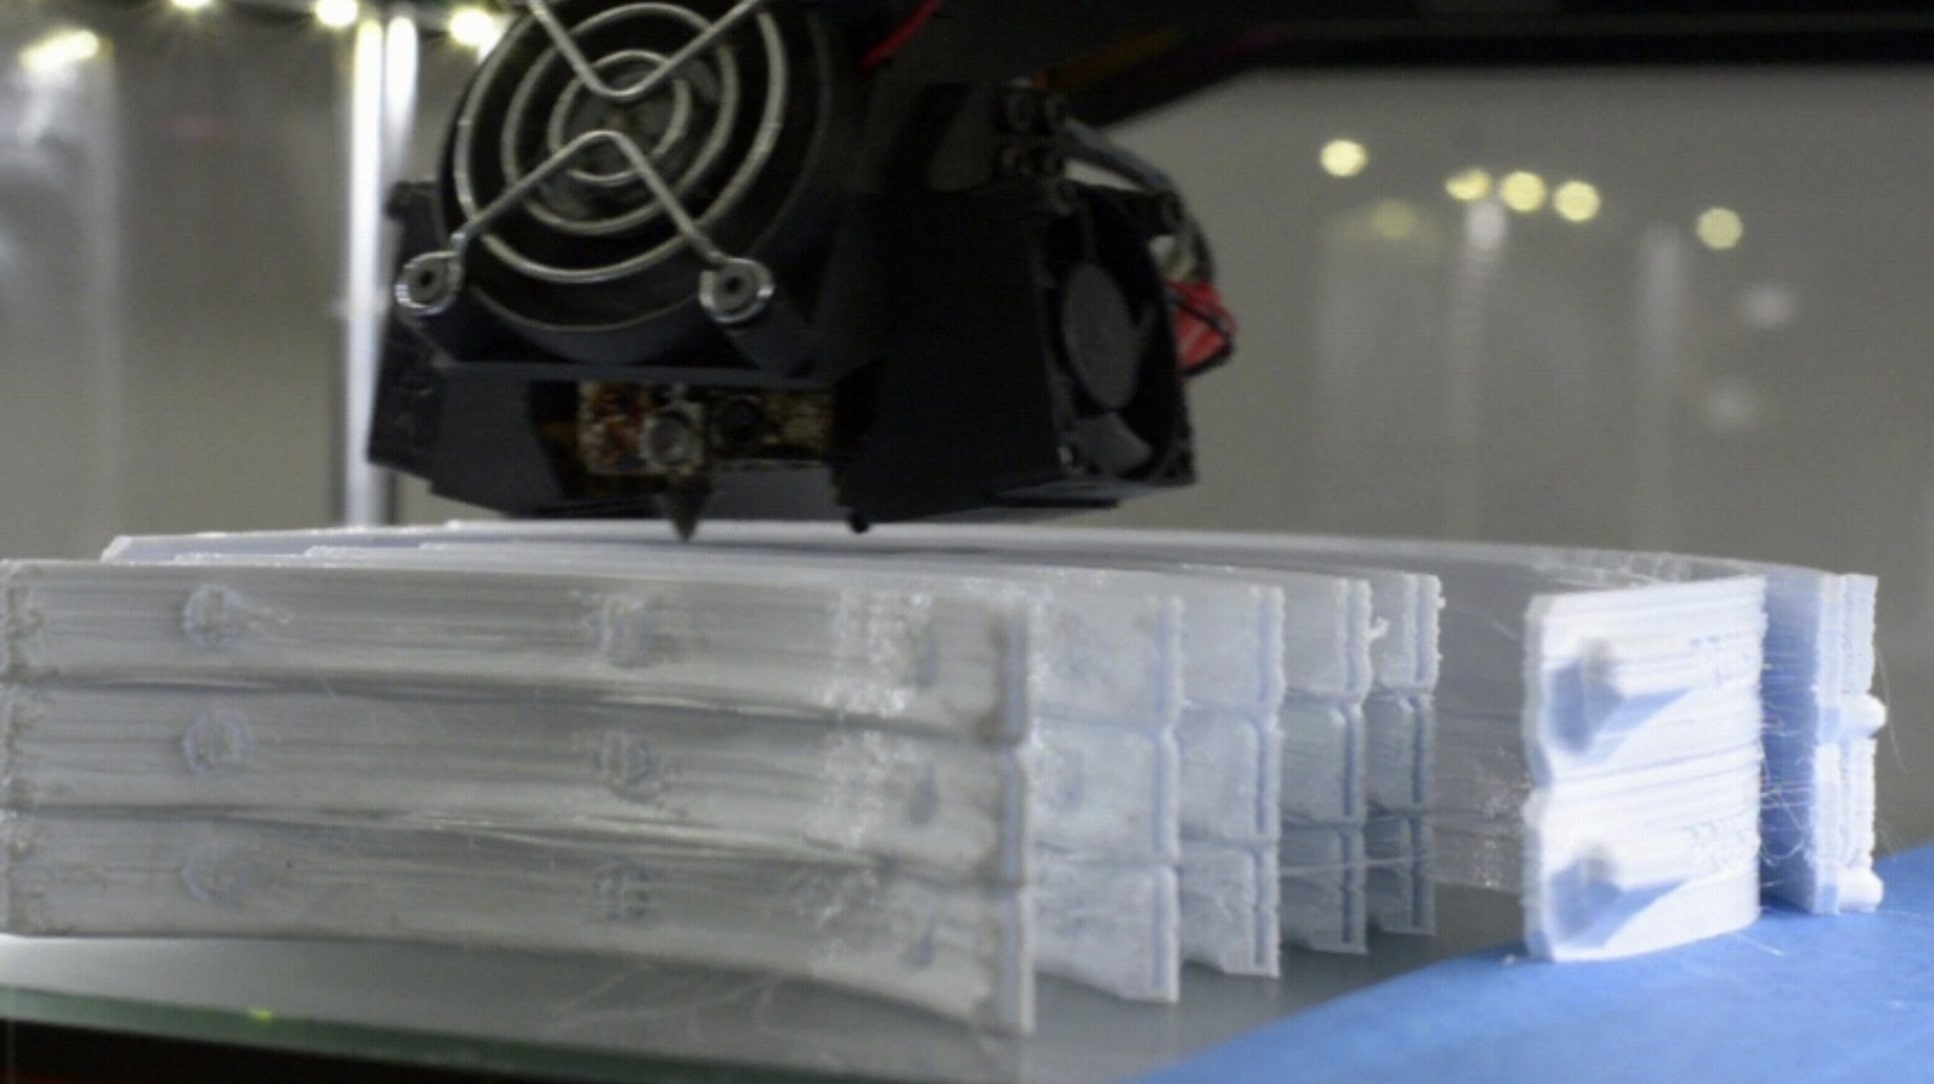  ΕΜΠ: Παραγωγή και παράδοση εξαρτημάτων προστατευτικών μασκών με 3D εκτύπωση για την αντιμετώπιση της Πανδημίας